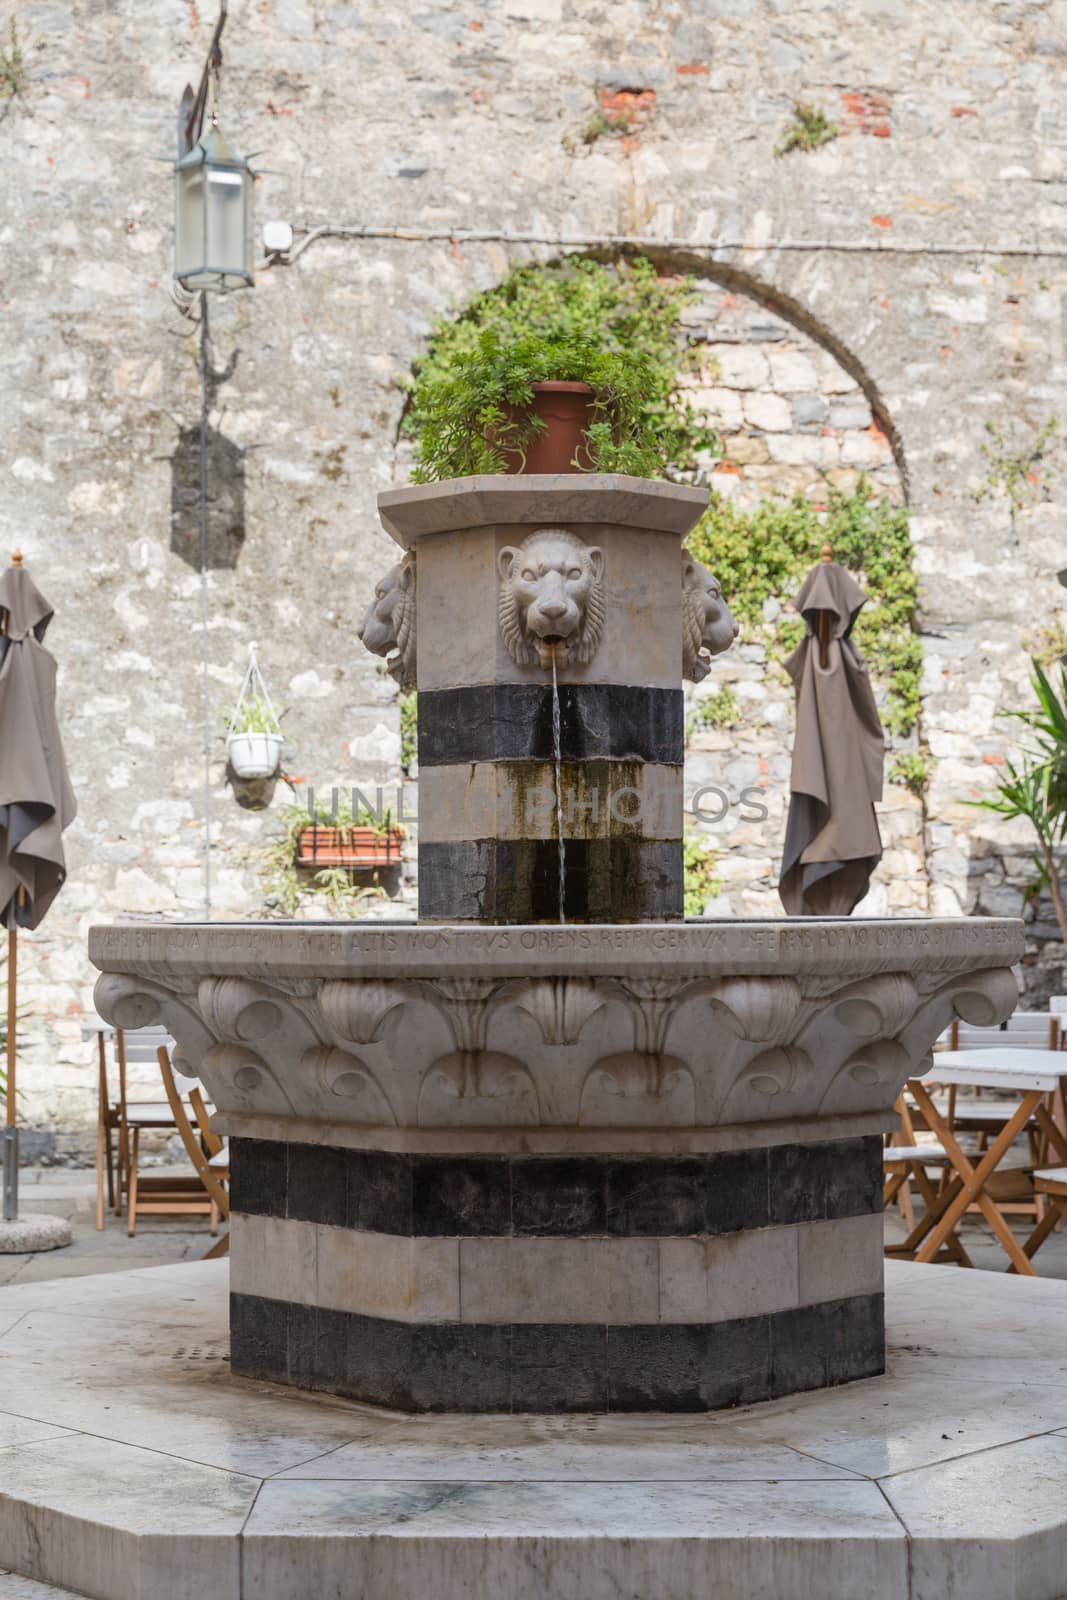 Fountain in Portovenere in the Ligurian region of Italy near the Cinque Terre